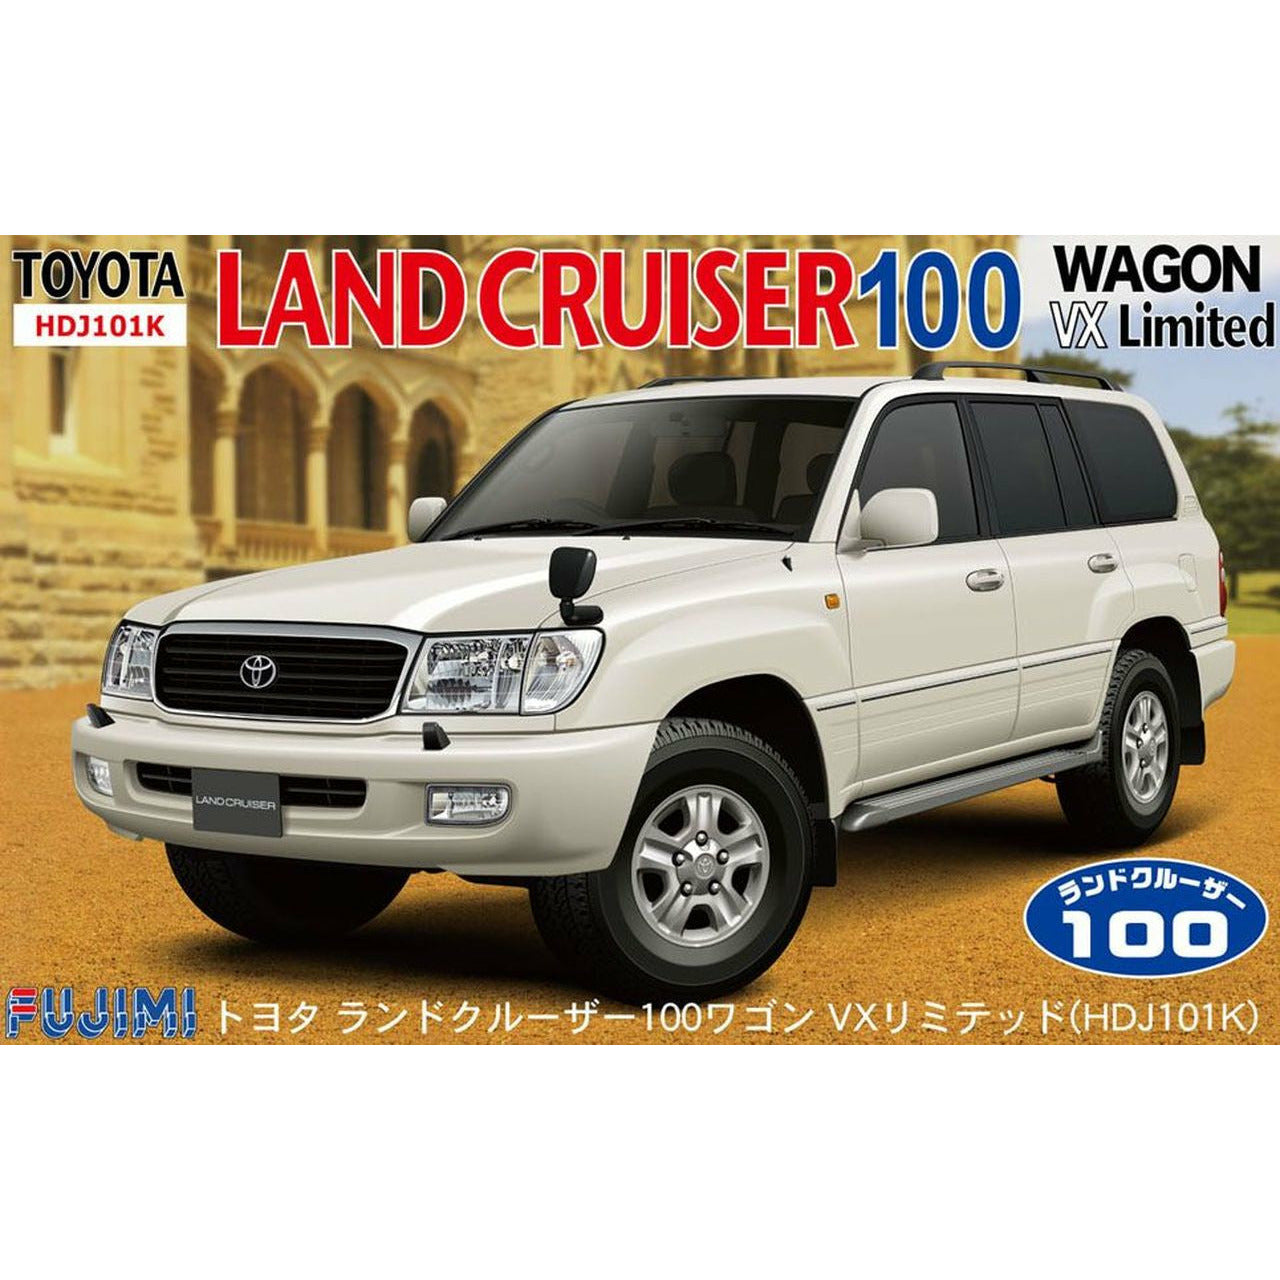 Landcruiser 100 Wagon VX Limited 1/24 #38001 by Fujimi